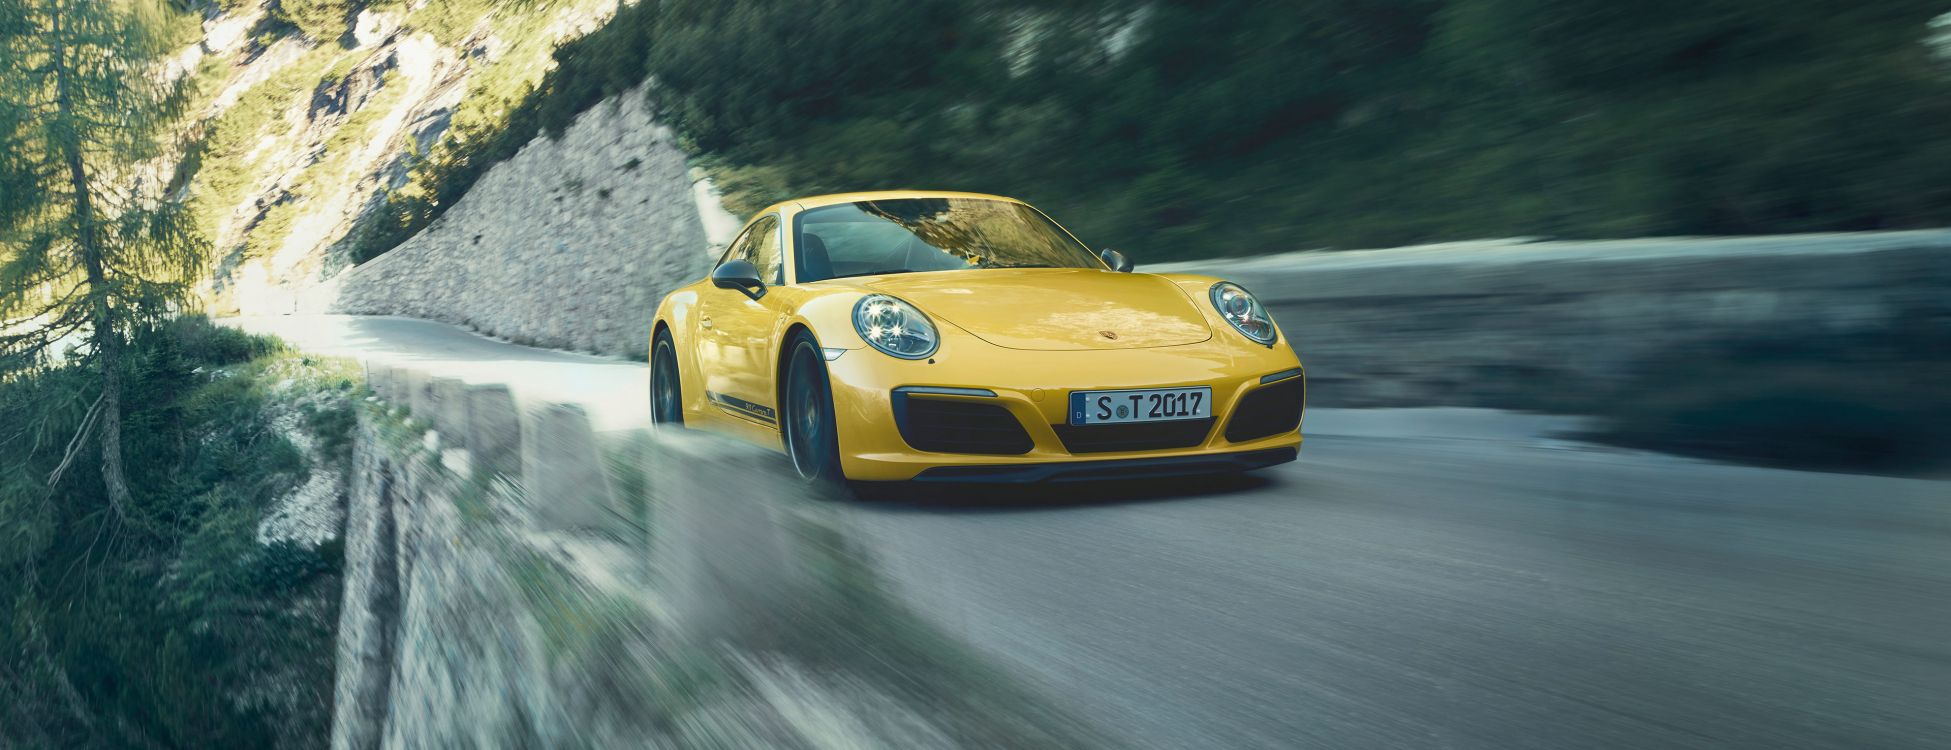 Porsche 911 Jaune Sur Route Pendant la Journée. Wallpaper in 3840x1476 Resolution